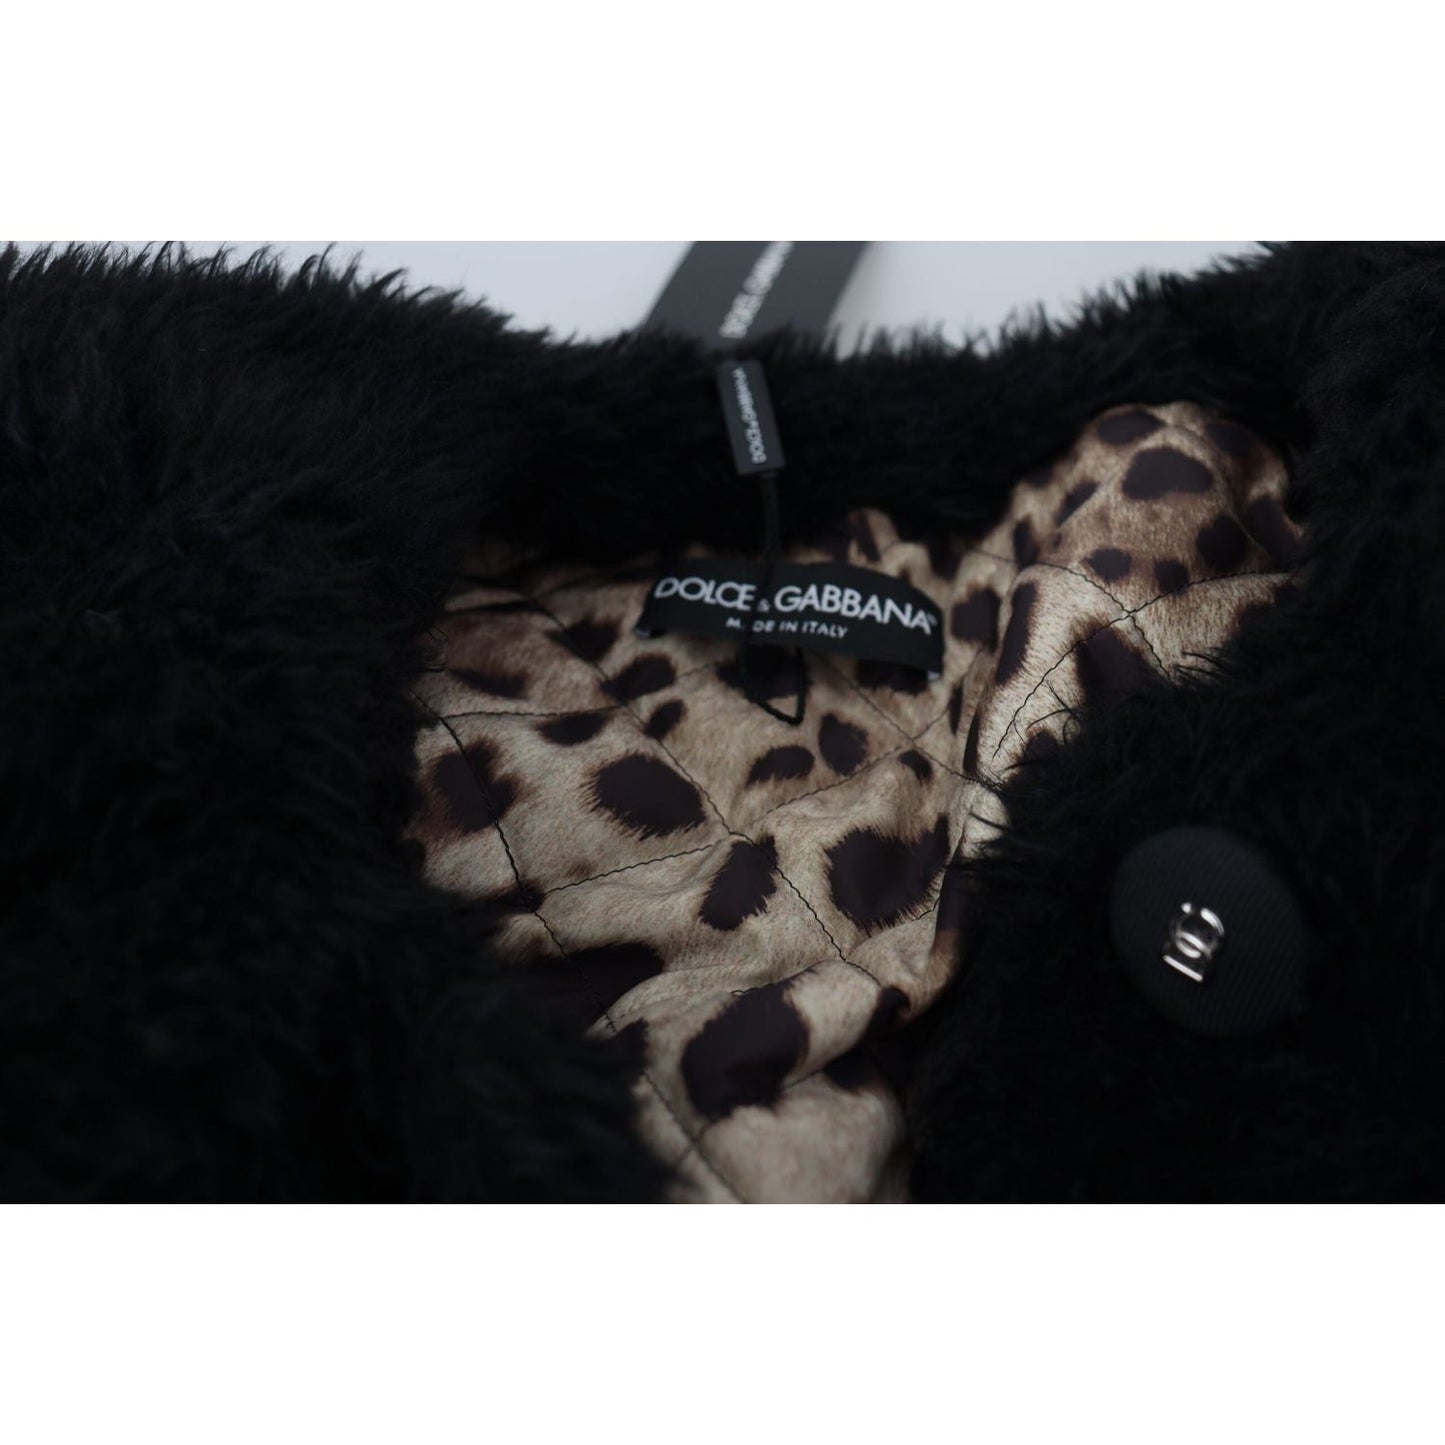 Dolce & Gabbana Elegant Black Cashmere Blend Overcoat Jacket black-cashmere-blend-faux-fur-coat-jacket